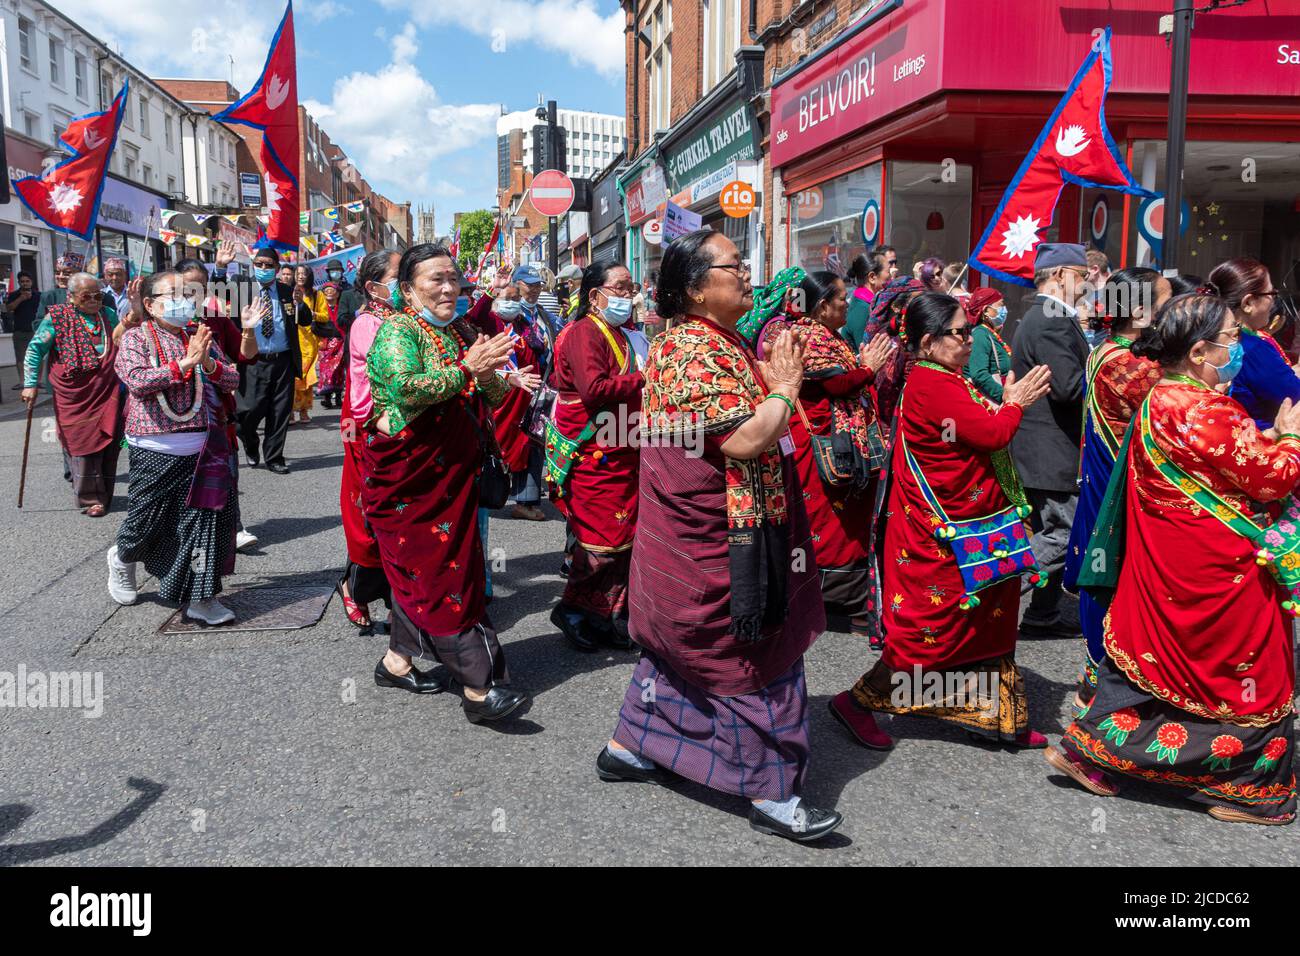 Les népalais du centre communautaire bouddhiste du Grand Parade à la fête de Victoria, un événement annuel à Aldershot, Hampshire, Angleterre, Royaume-Uni Banque D'Images